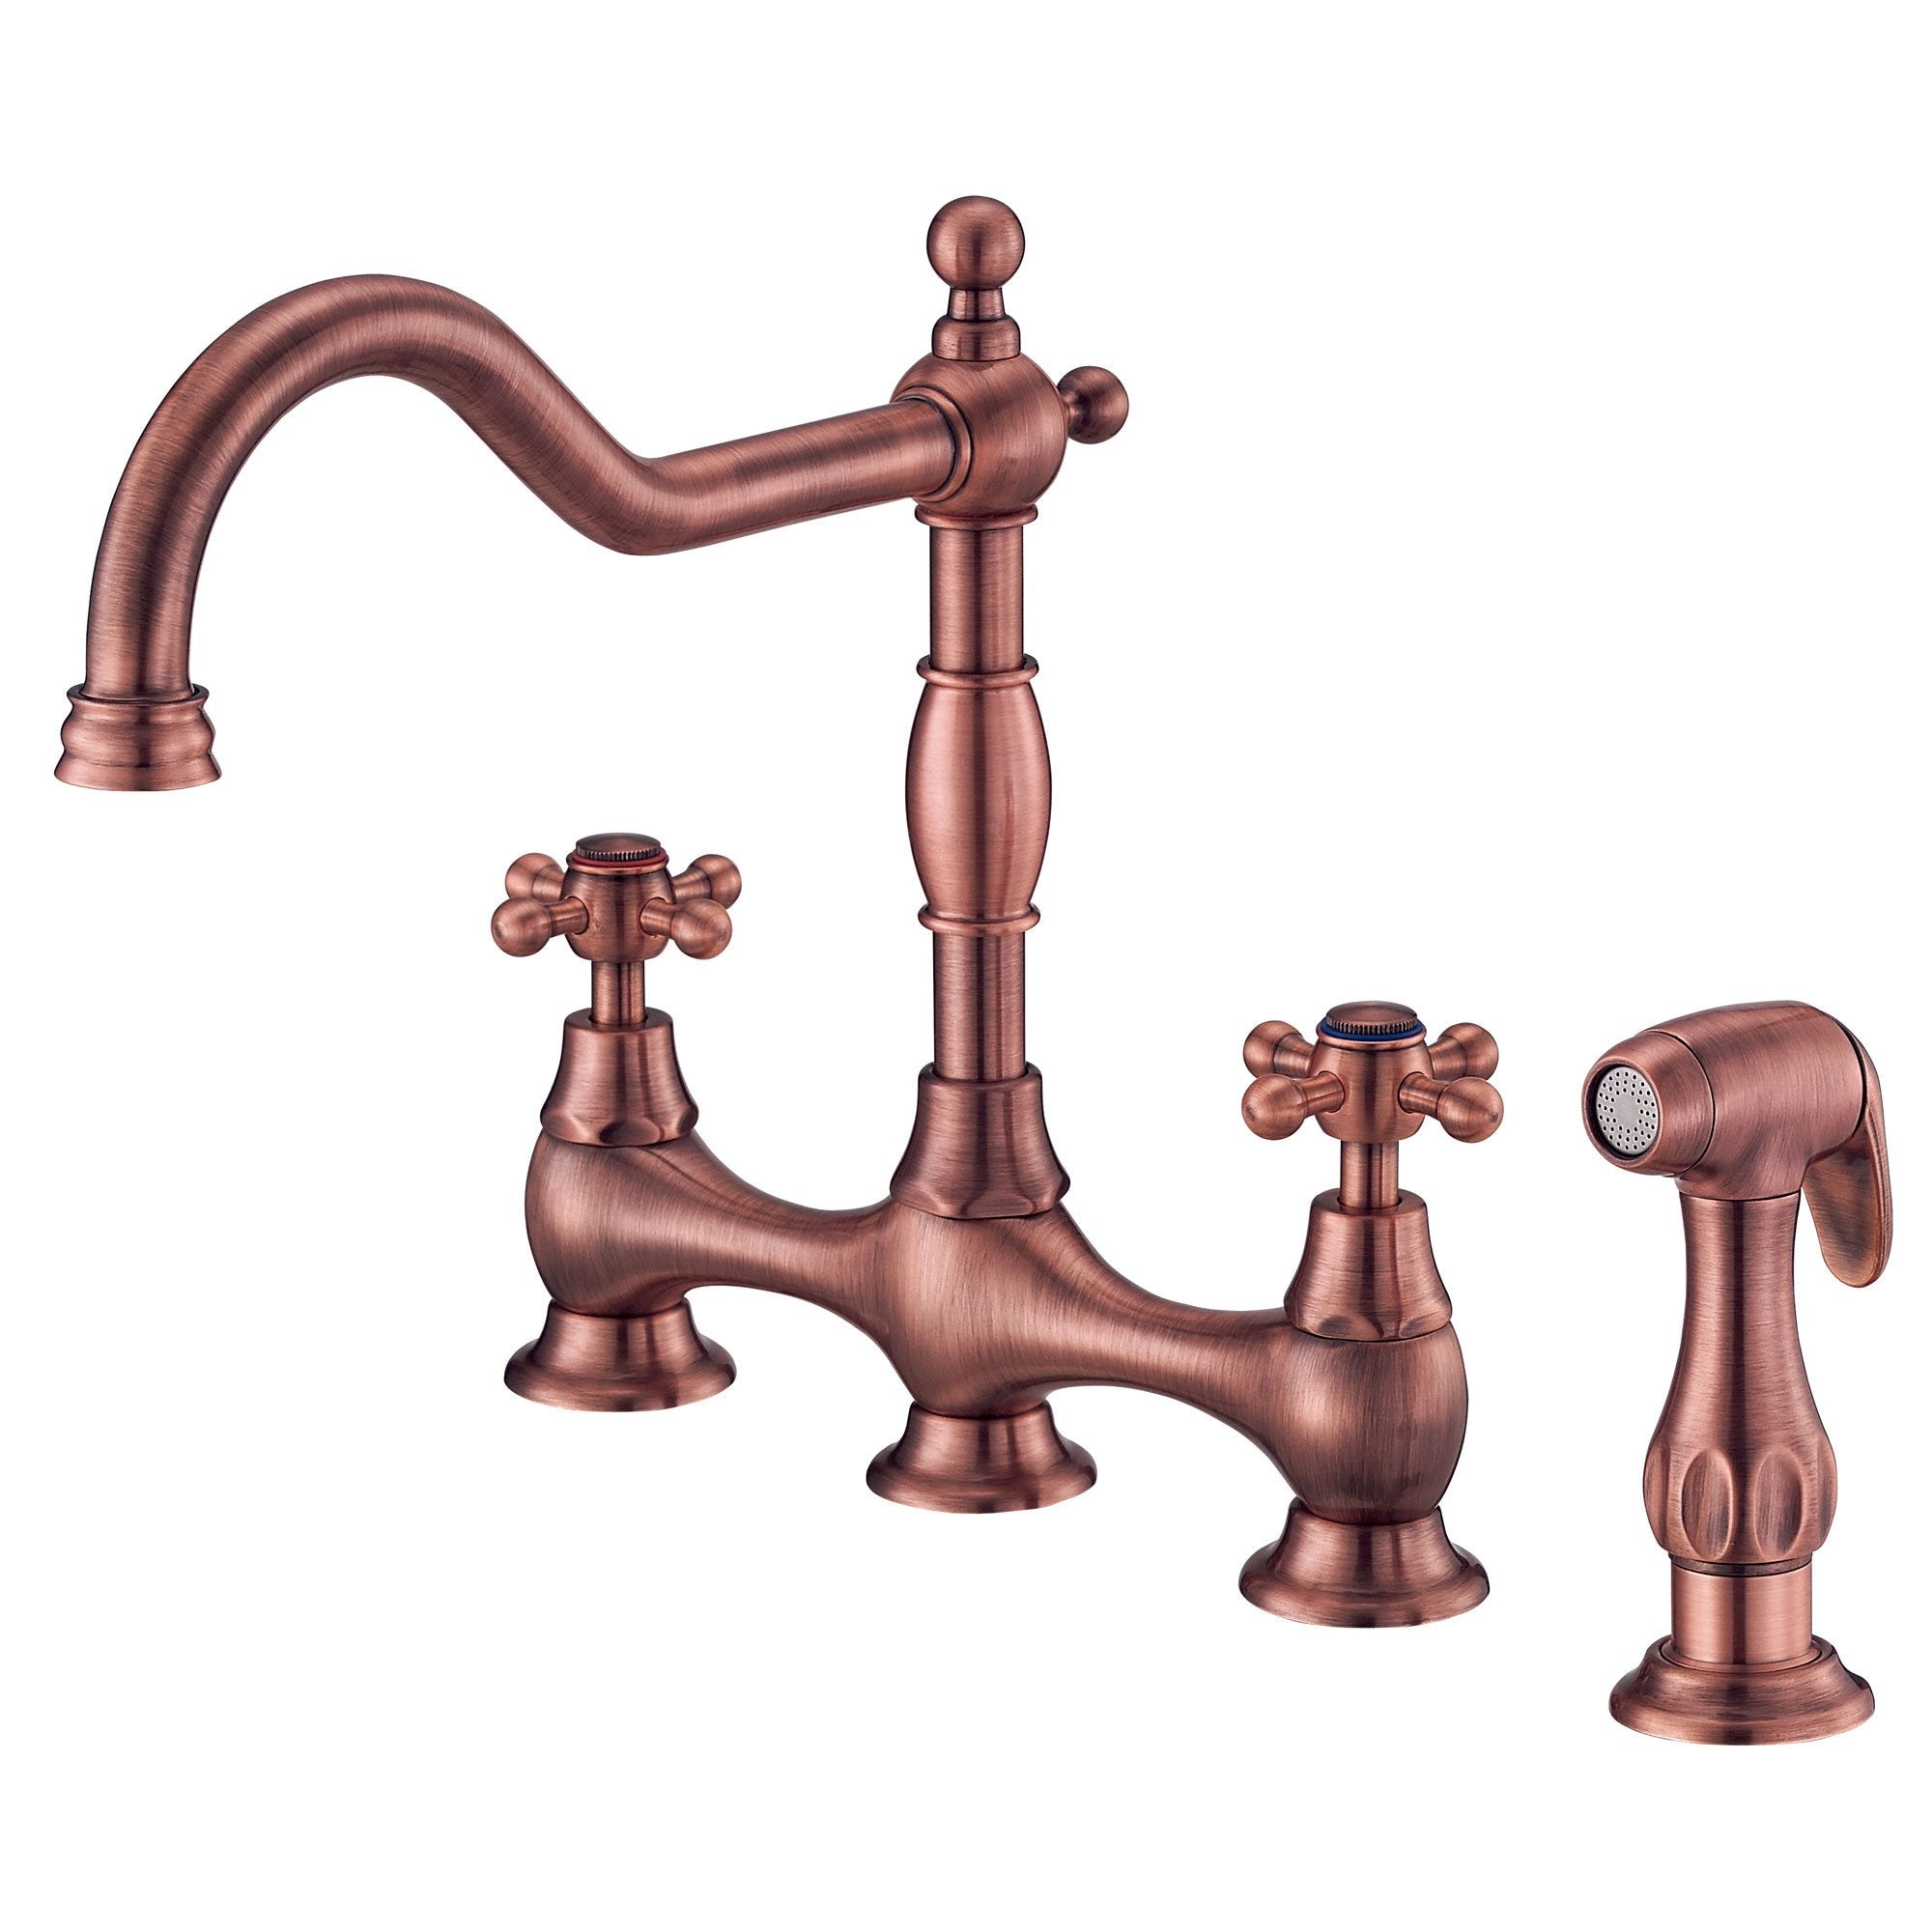 Danze Opulence Antique Copper Cross Handle Bridge Kitchen Faucet with